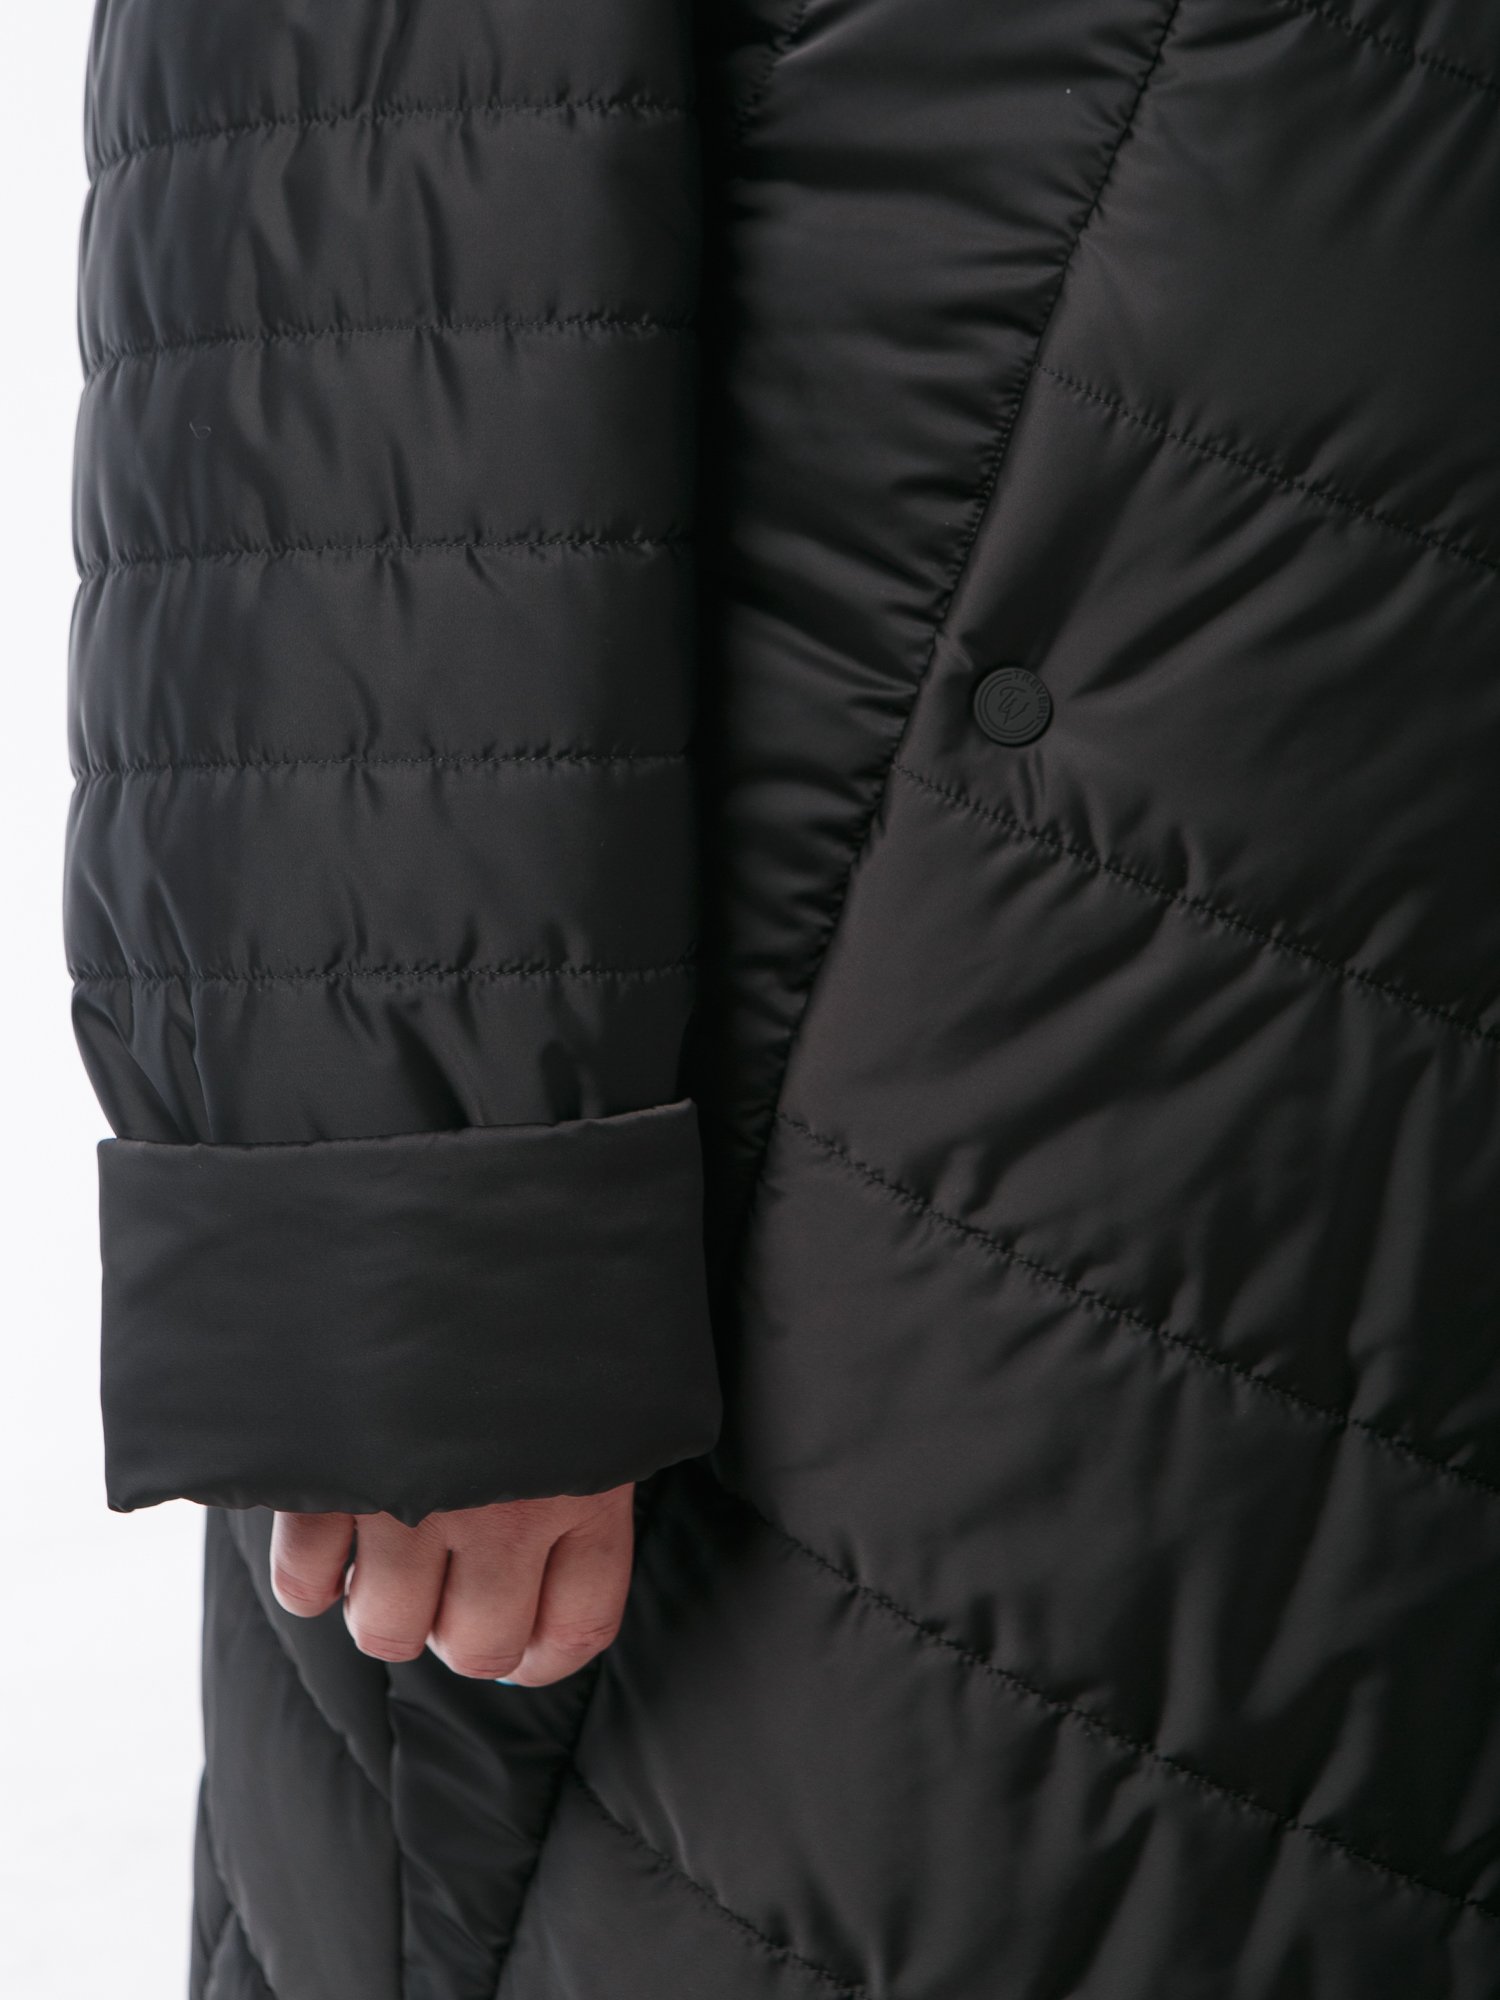 Пальто из комбинированной стеганной ткани черного цвета с брендированными лентами, цвет черный в интернет-магазине Фабрики Тревери